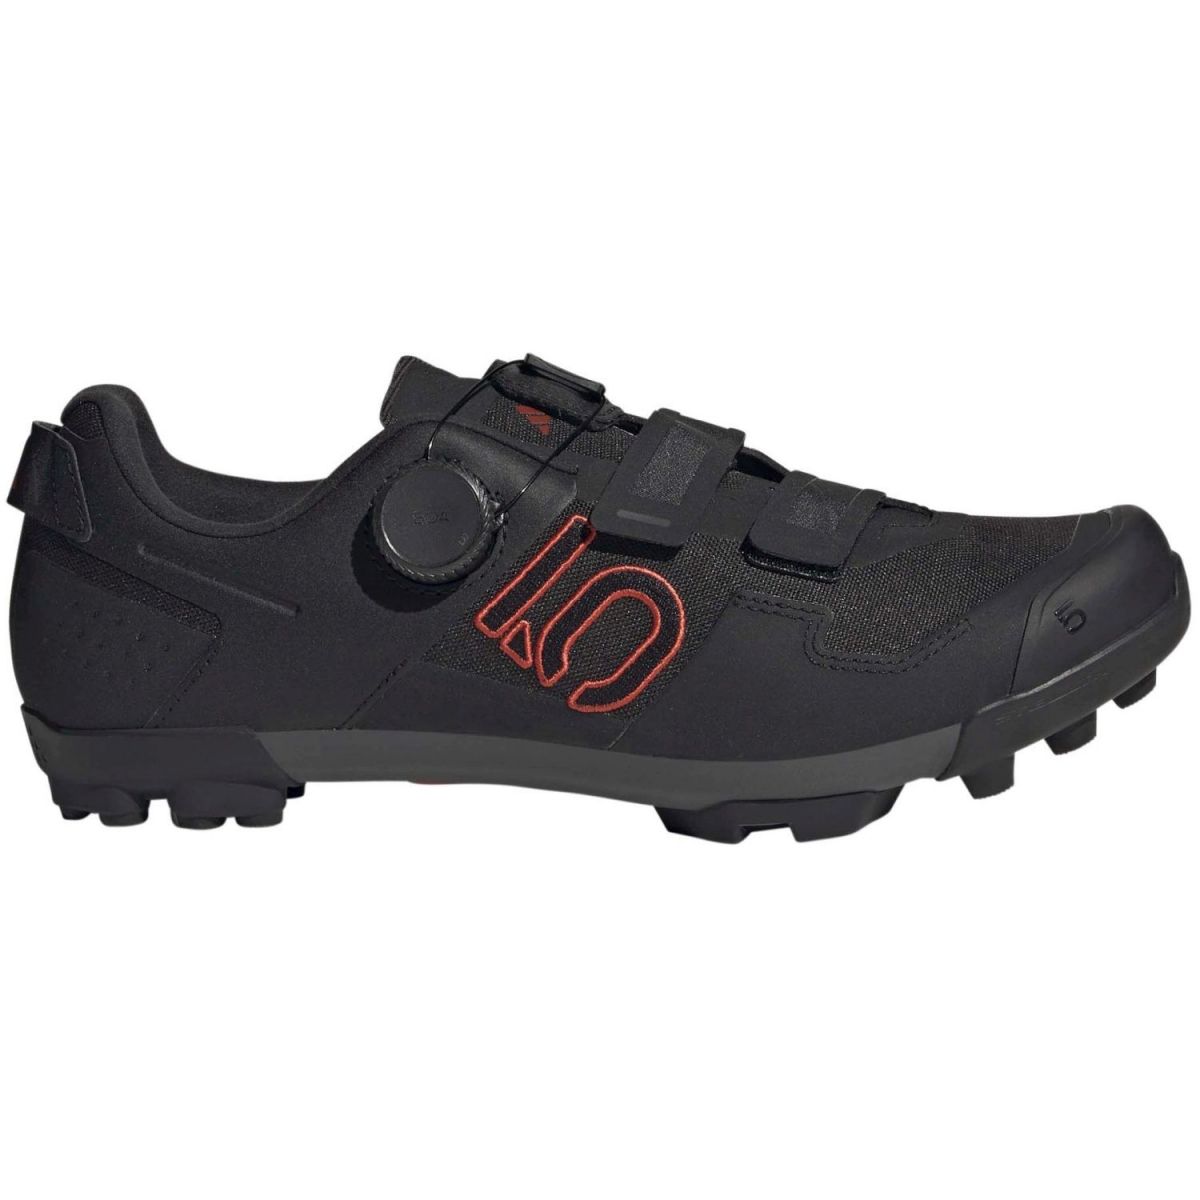 Zapatillas de mtb XC para pedal automático Five Ten Kestrel Boa en color negro | GW9431 | Marathon | trail